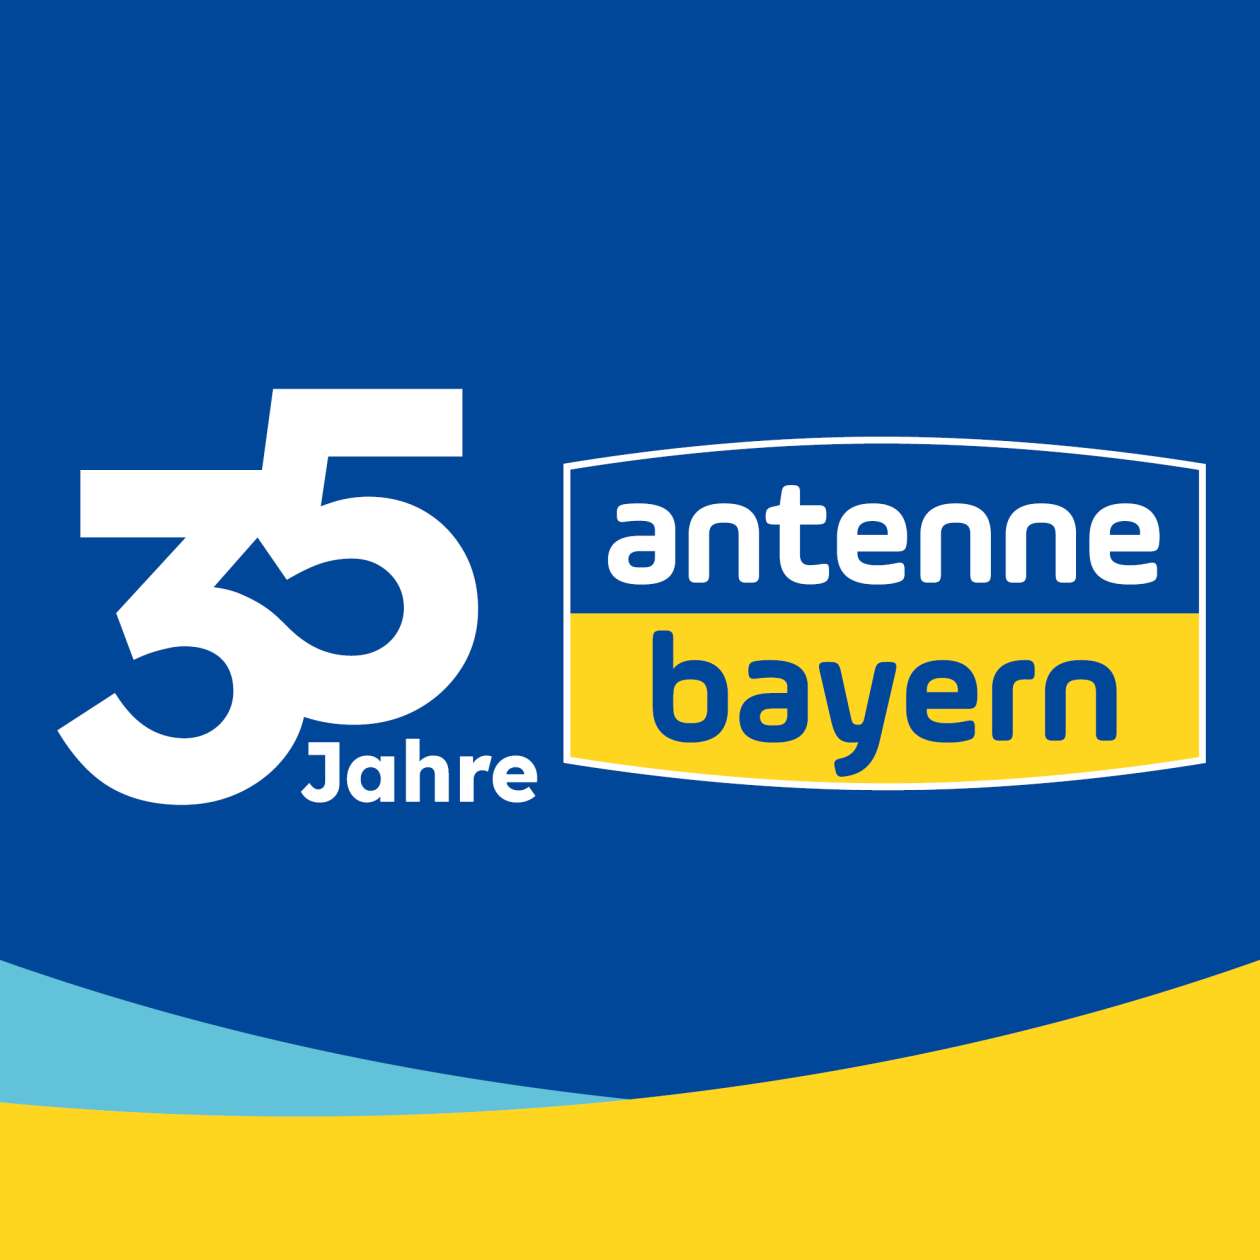 www.antenne.de